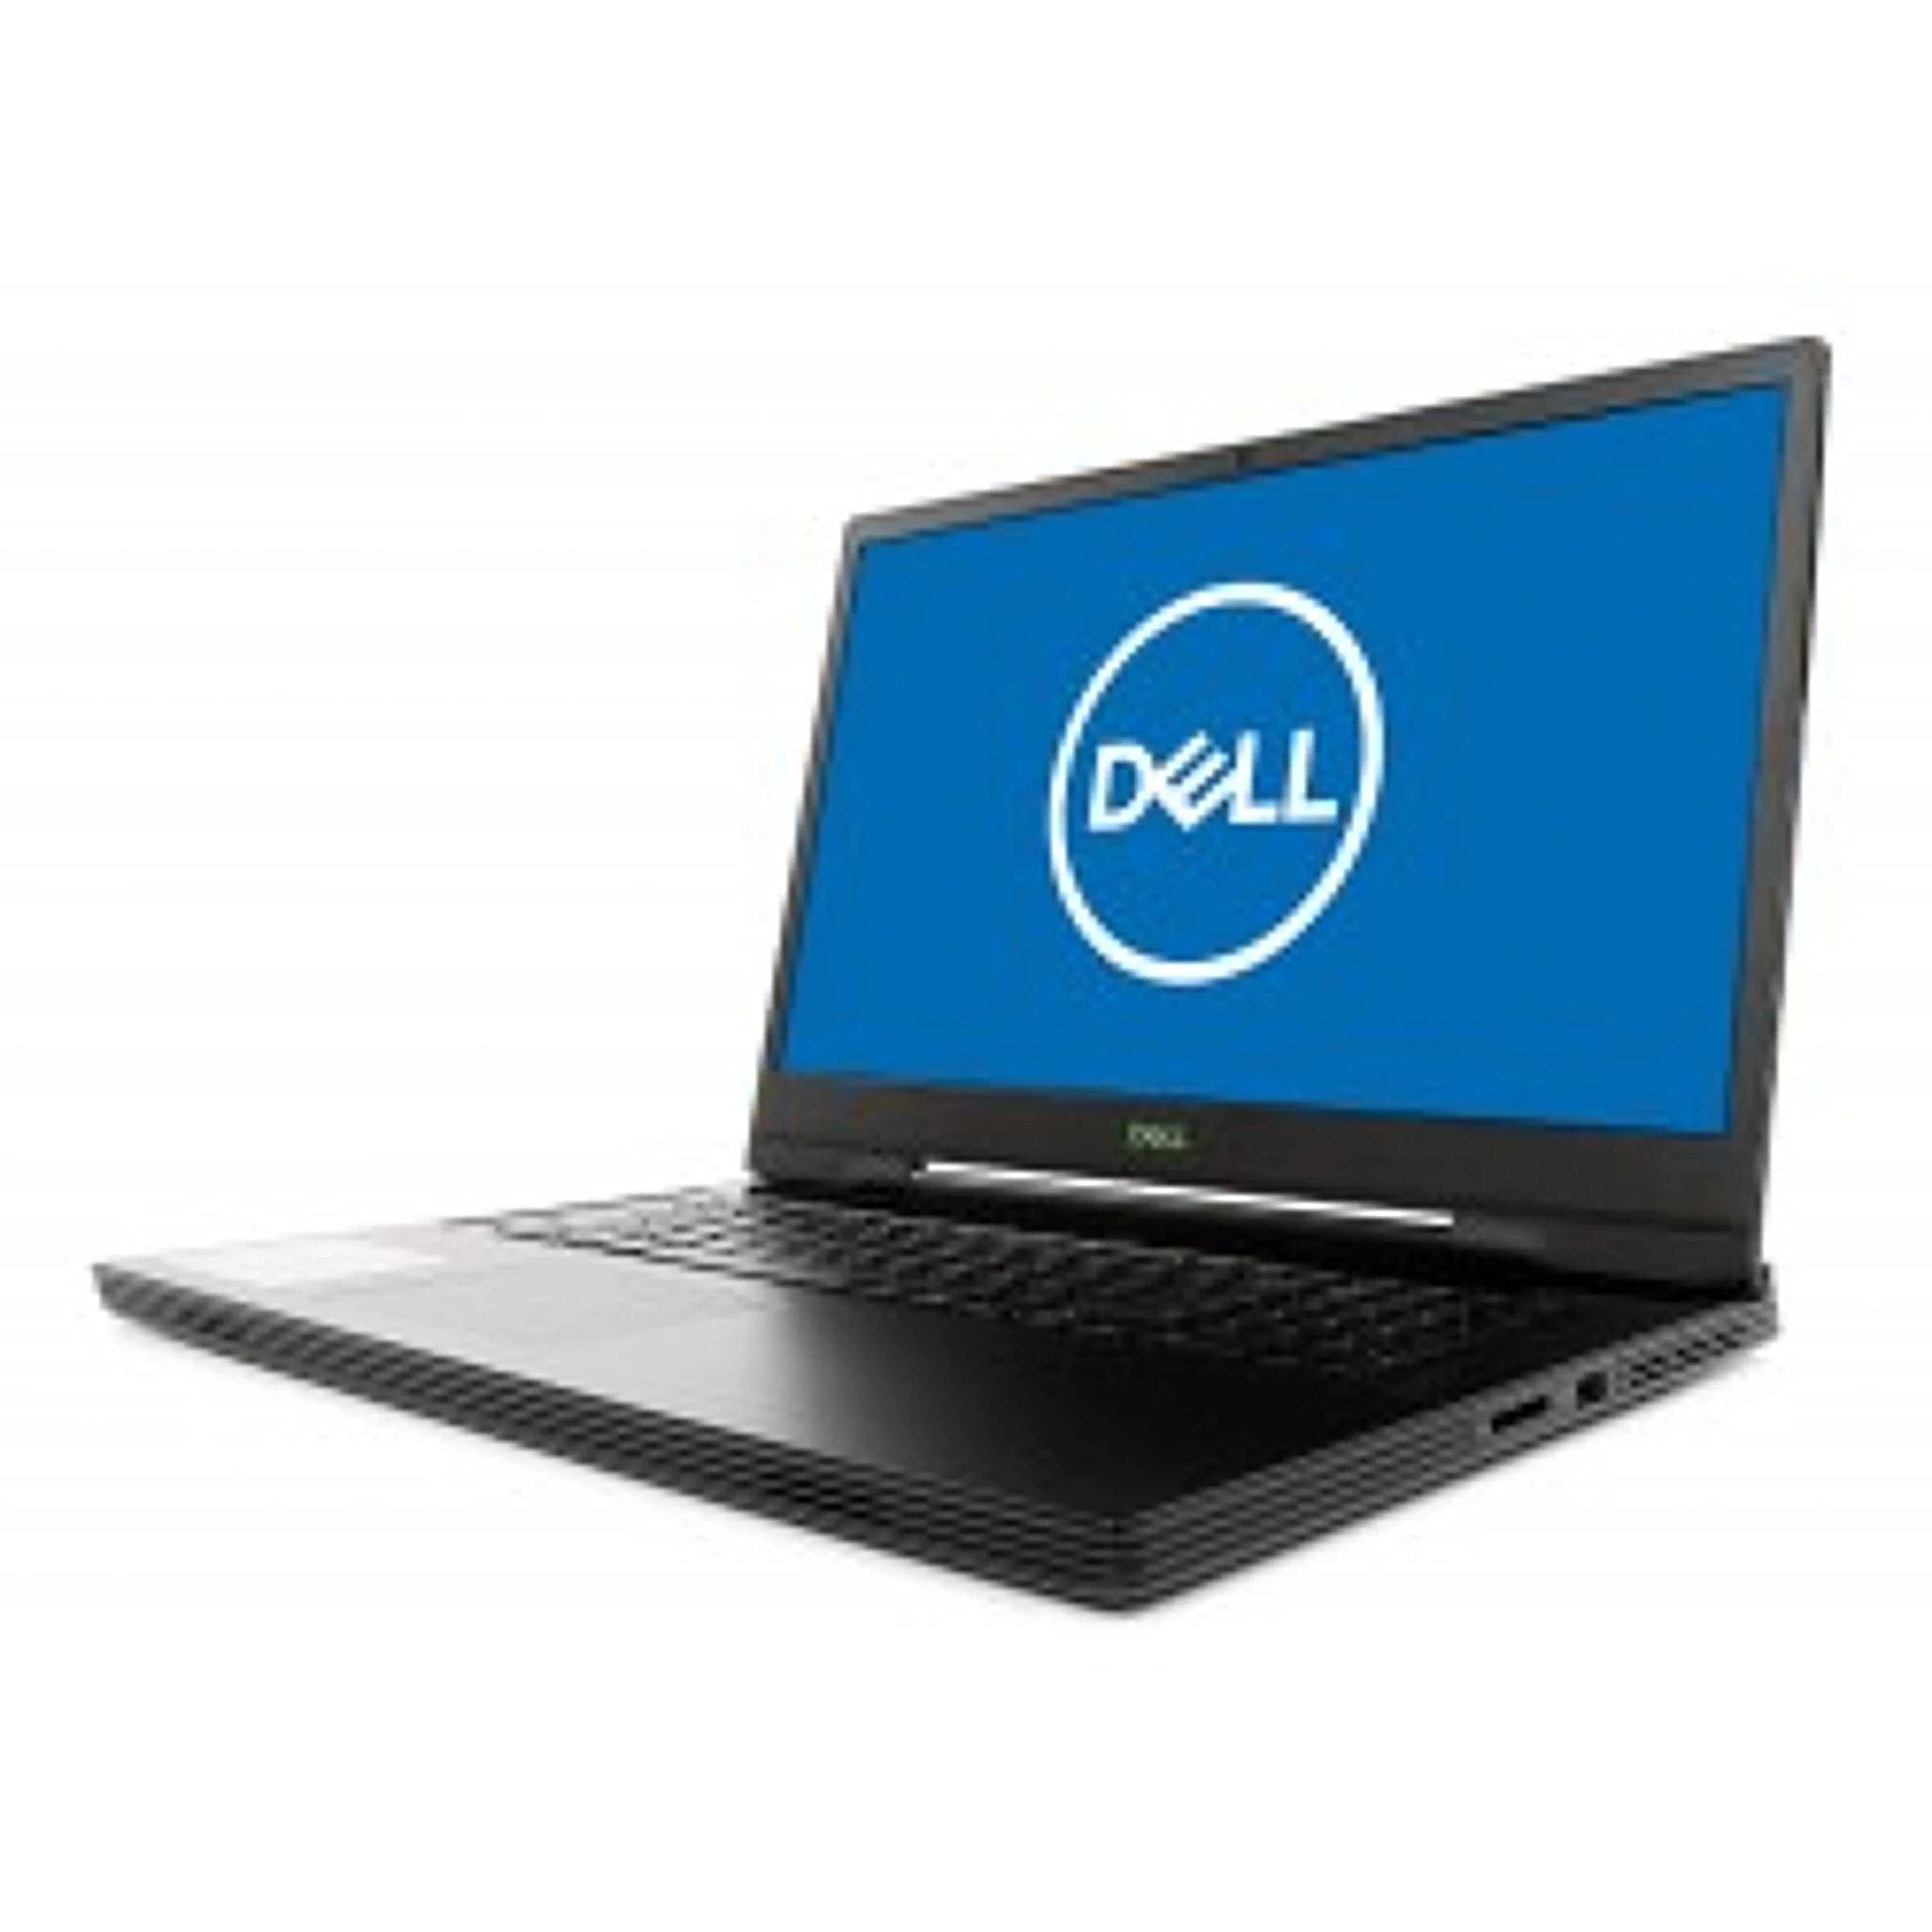 Dell g7 17 7790 - доступный игровой ноутбук на современной платформе не без недостатков